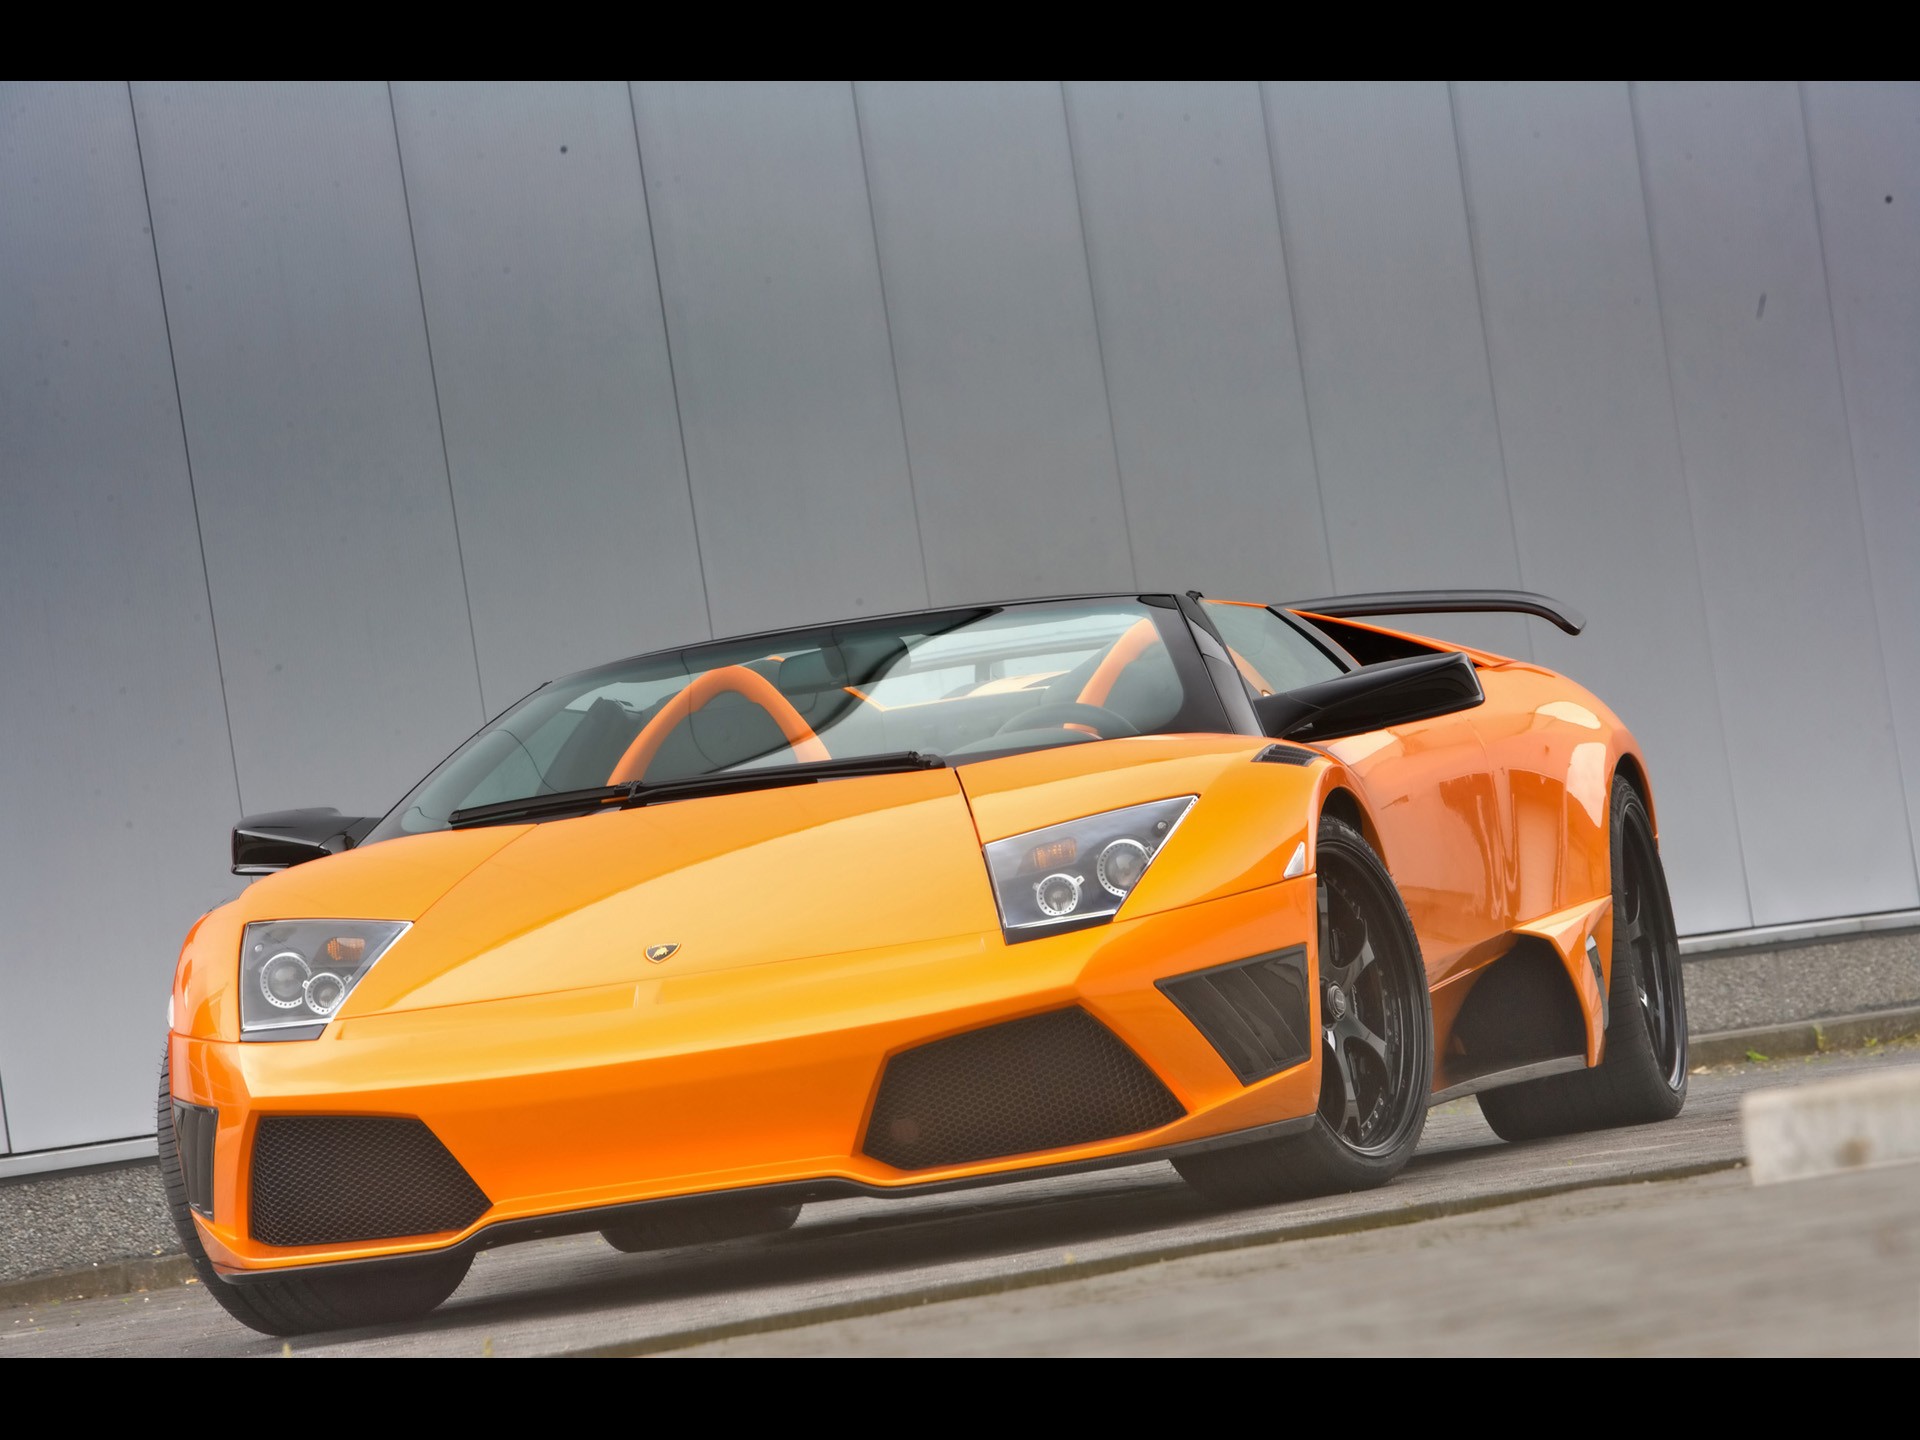 cars, Lamborghini, Vehicles, Lamborghini, Murcielago, Front, View, Orange, Cars, Italian, Cars Wallpaper